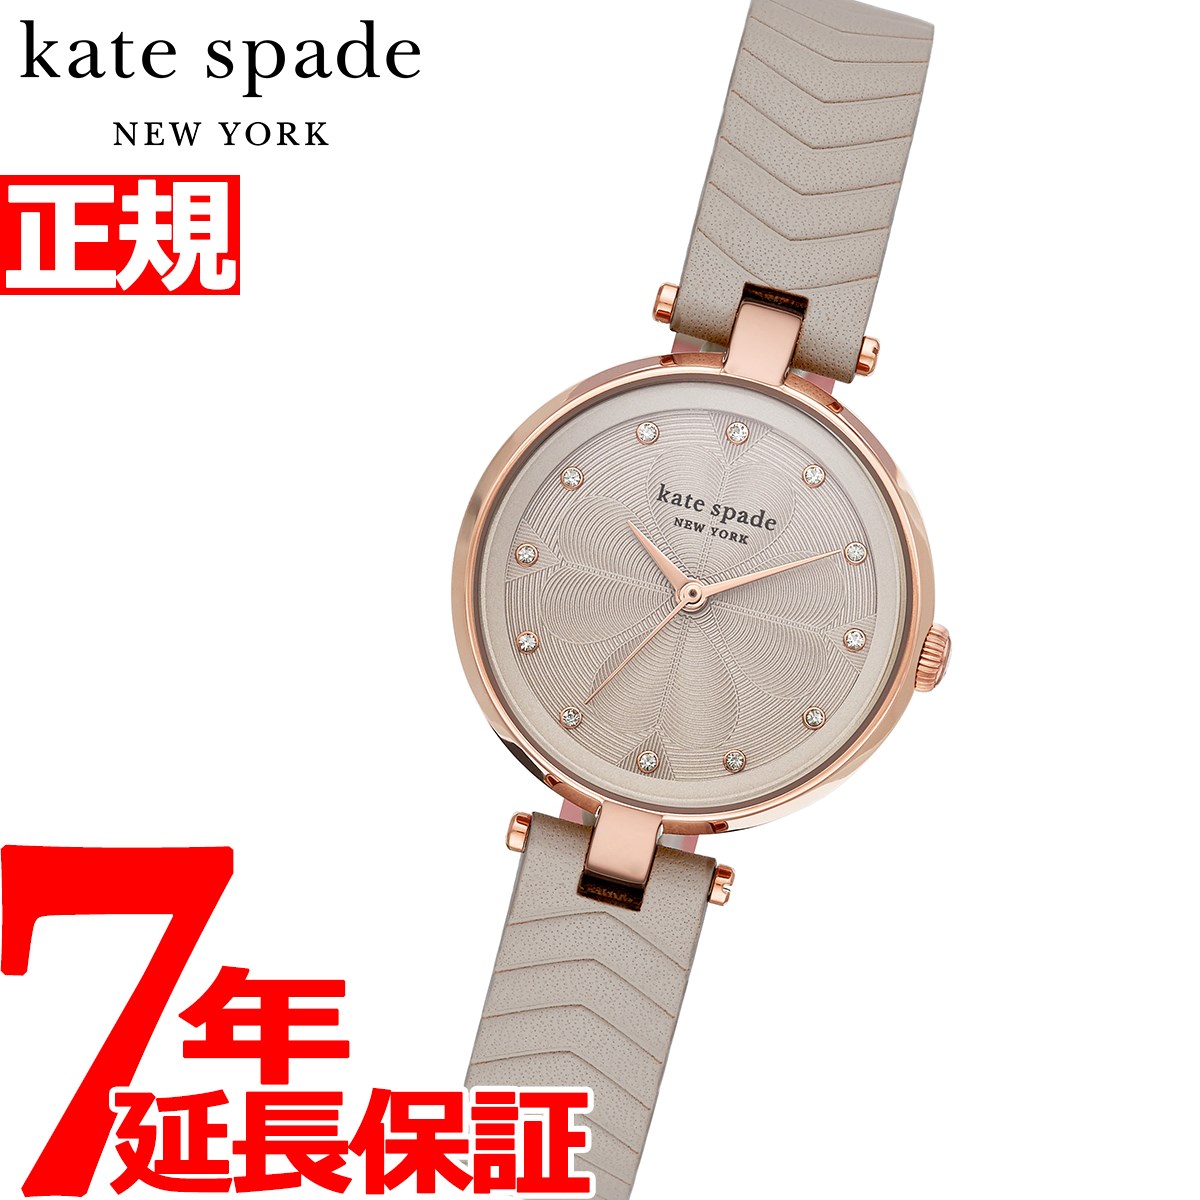 ブランド腕時計 レディース ケイトスペード 人気ブランドランキング2020 ベストプレゼント